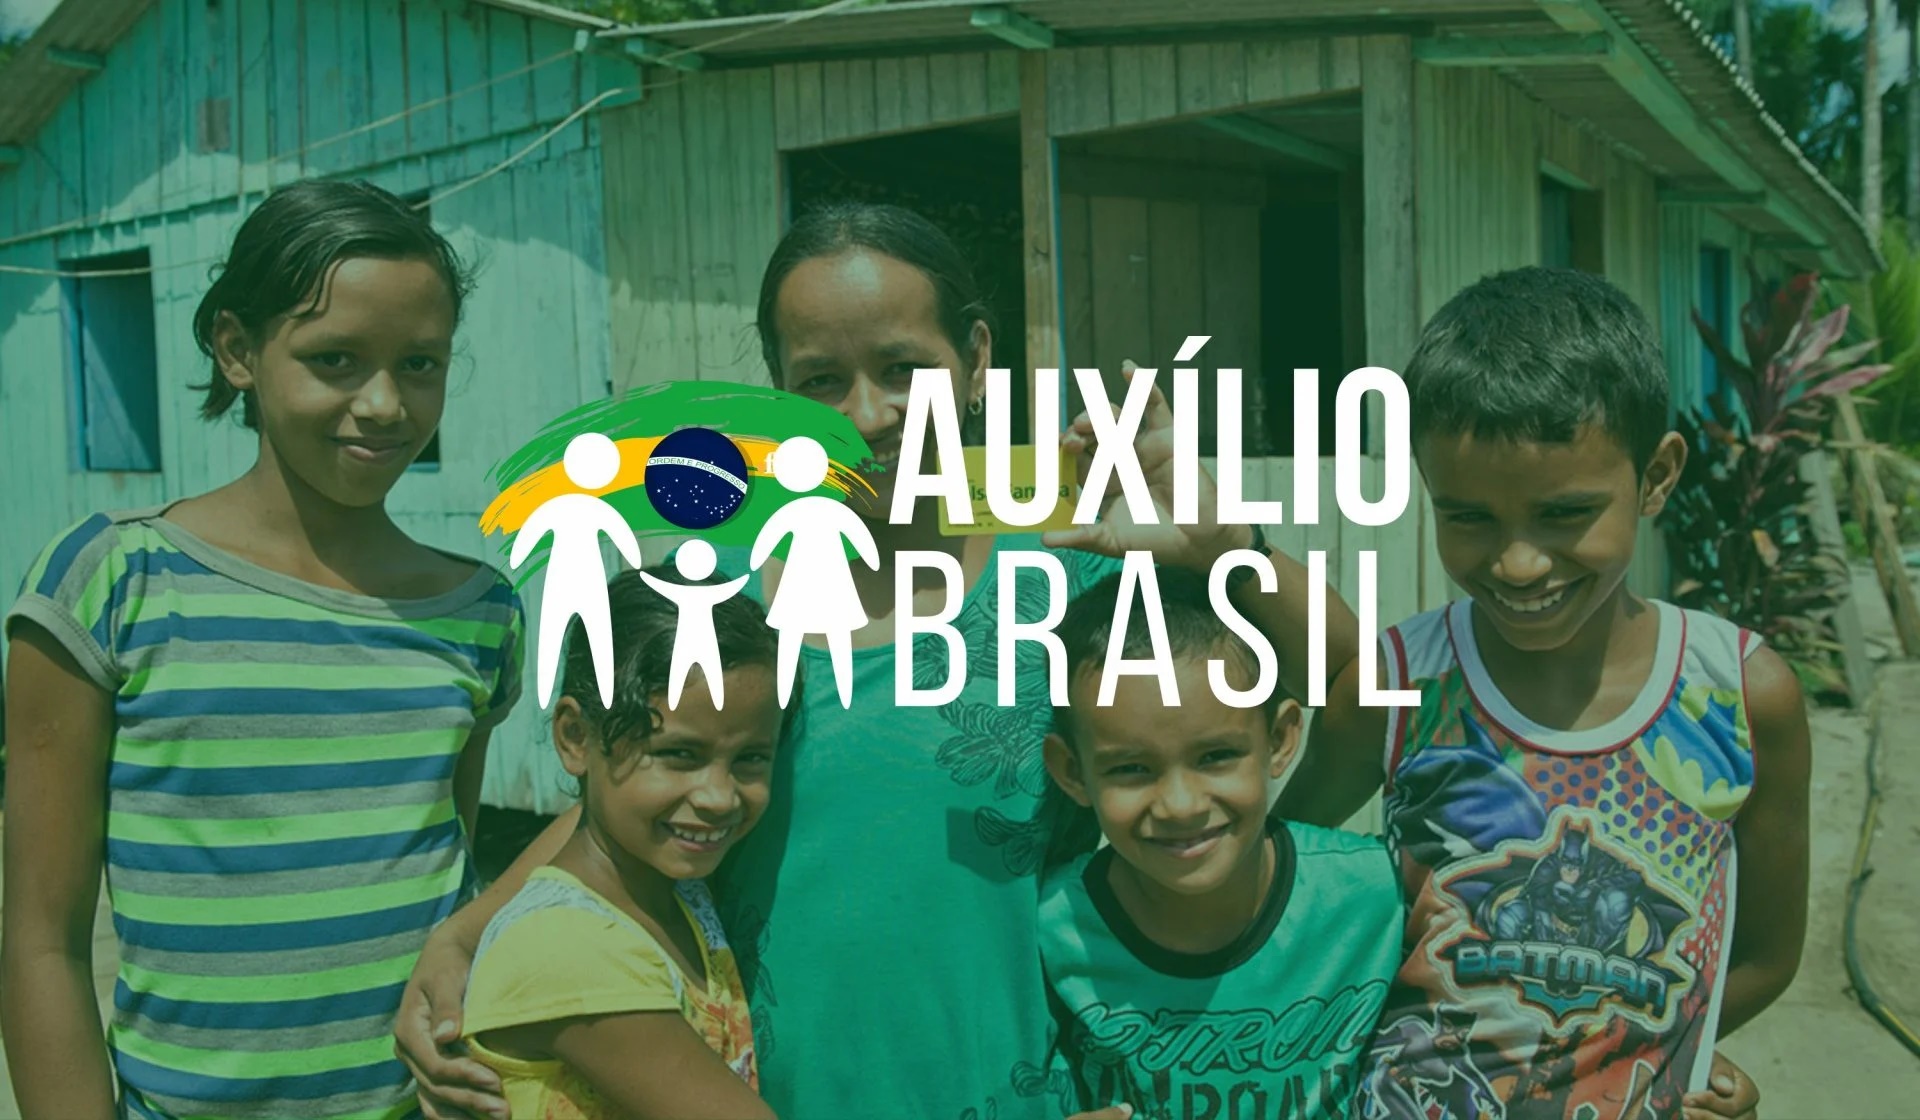 Caixa paga Auxílio Brasil a beneficiários com NIS final 9